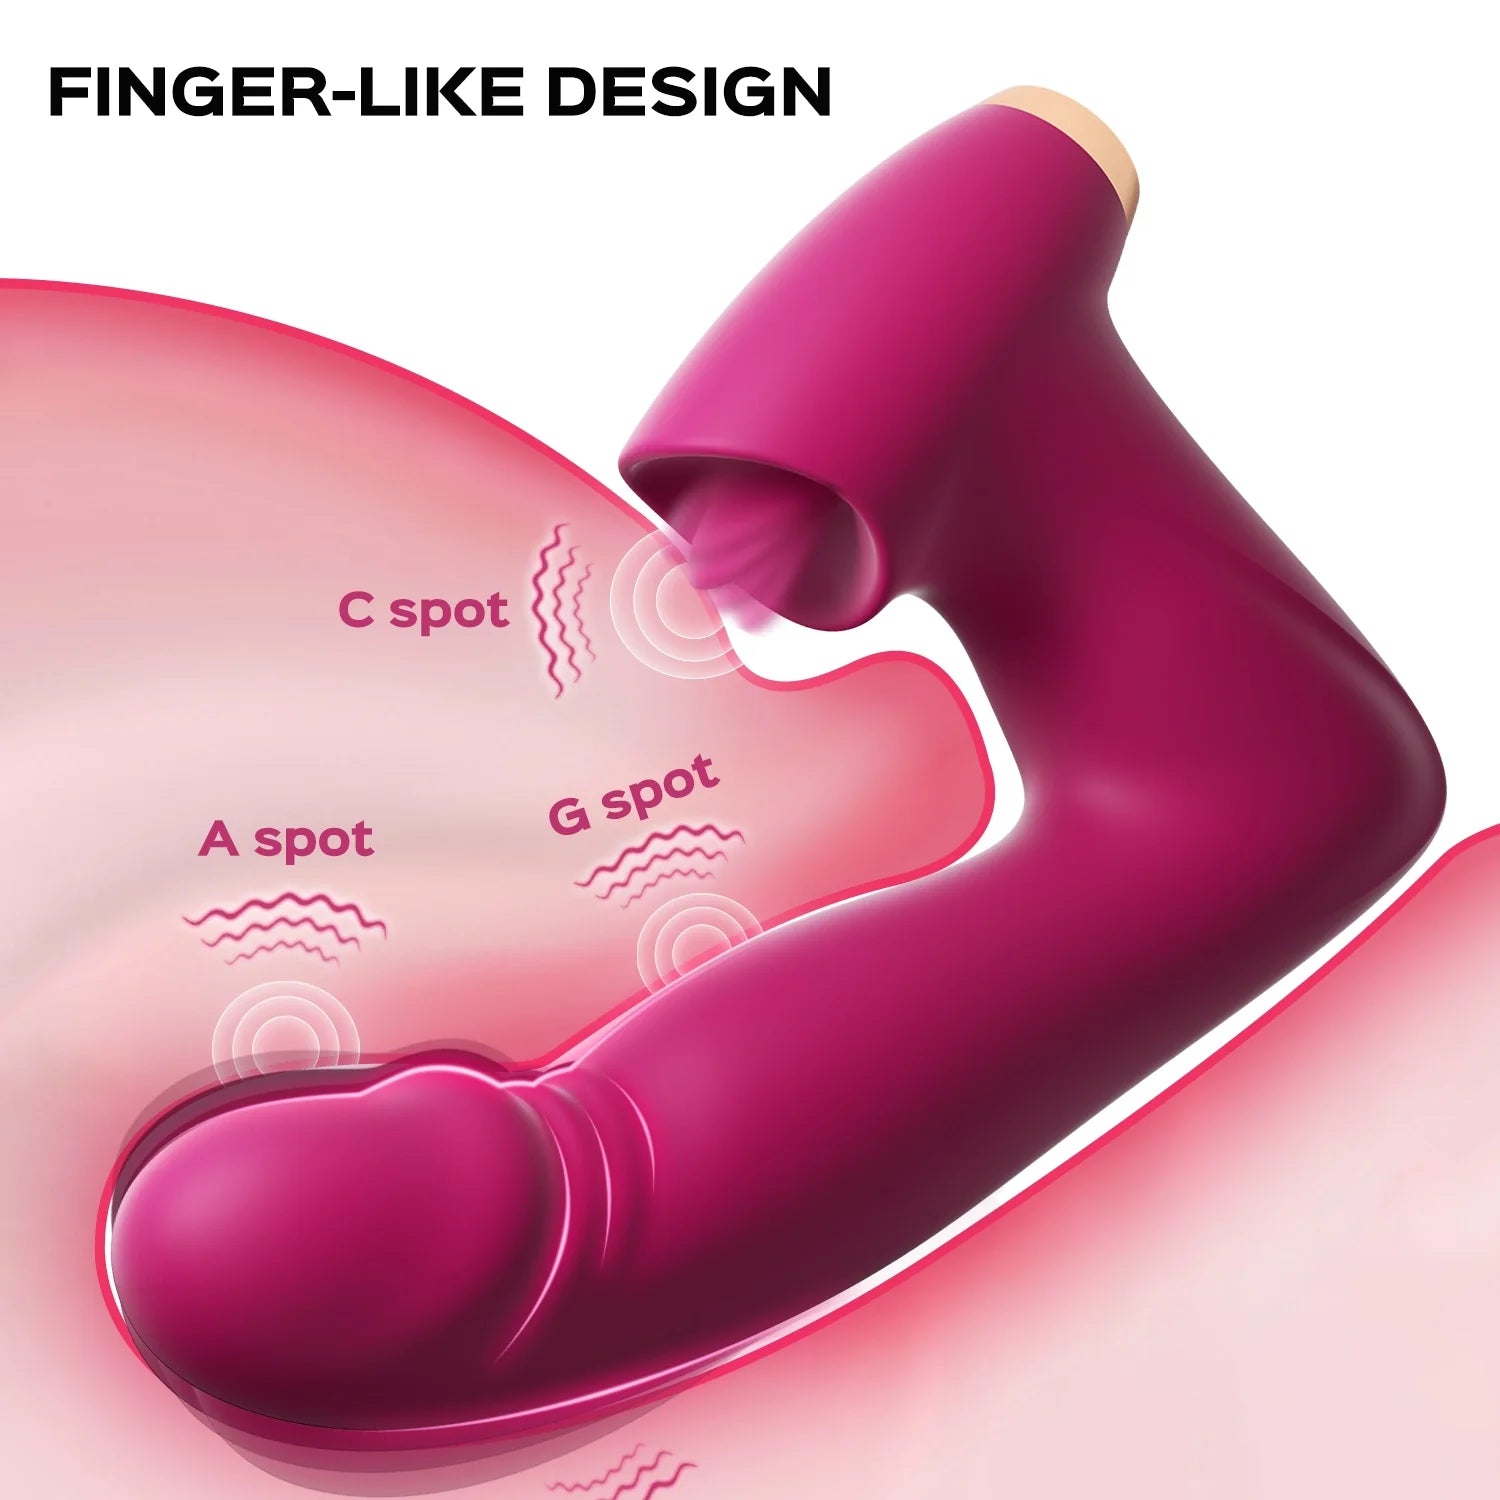 ROLA Klitoris leckender und klopfender G-Punkt-Vibrator